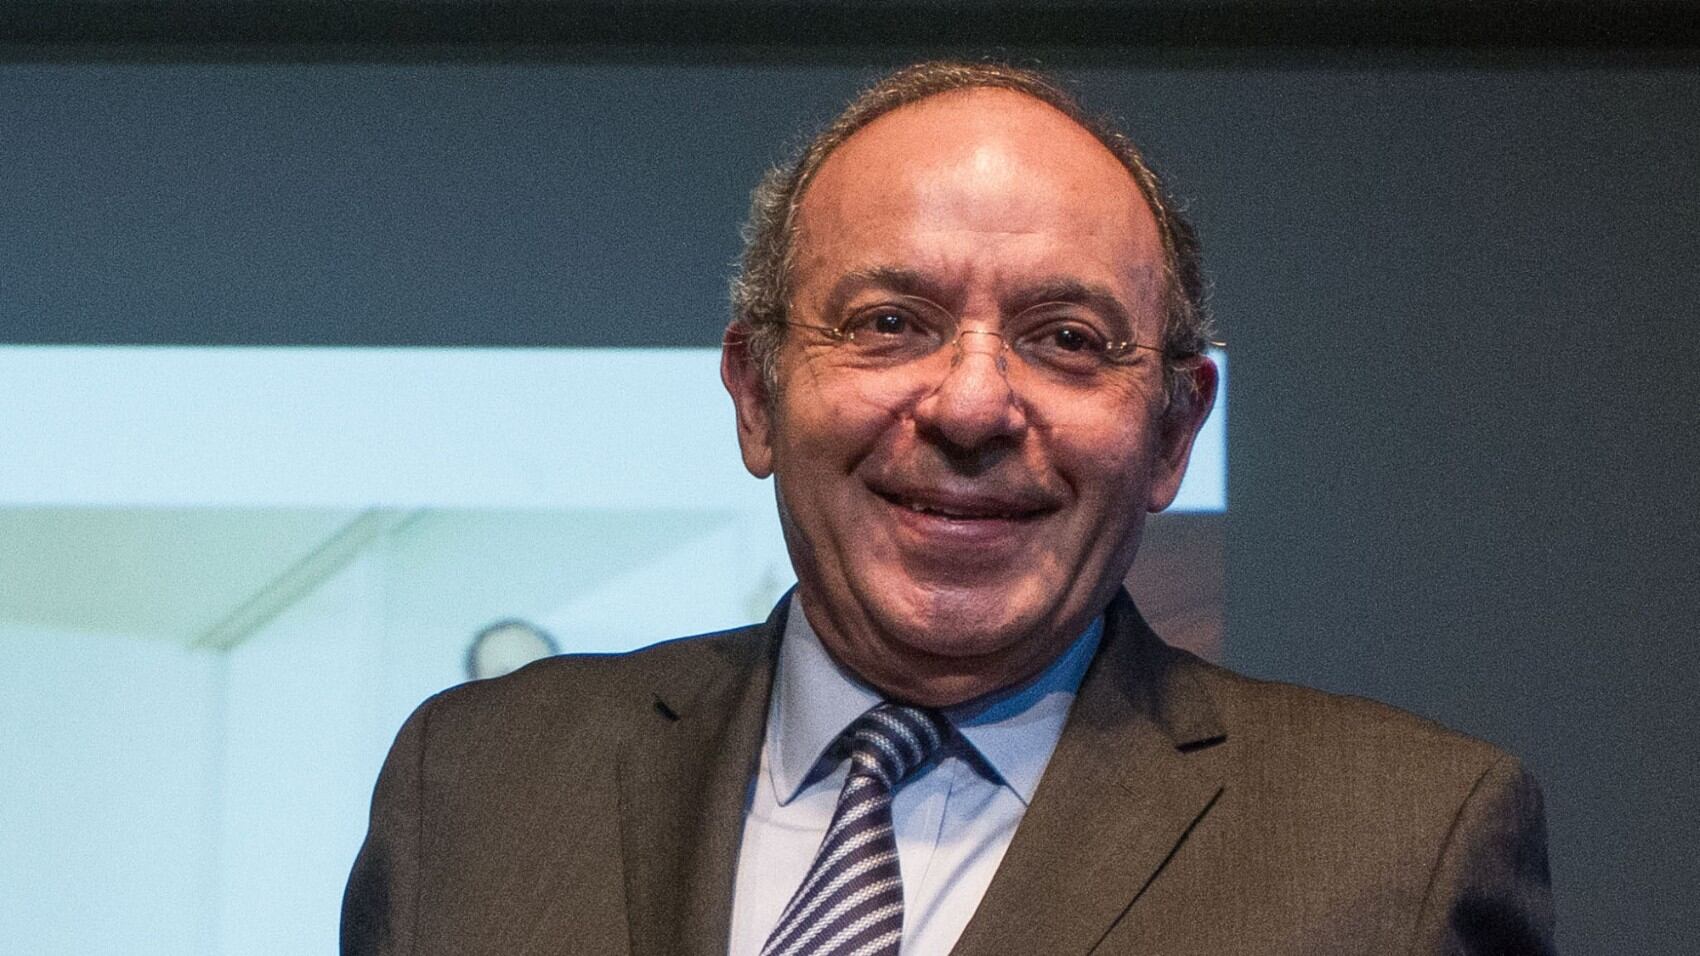 Héctor Aguilar Camín